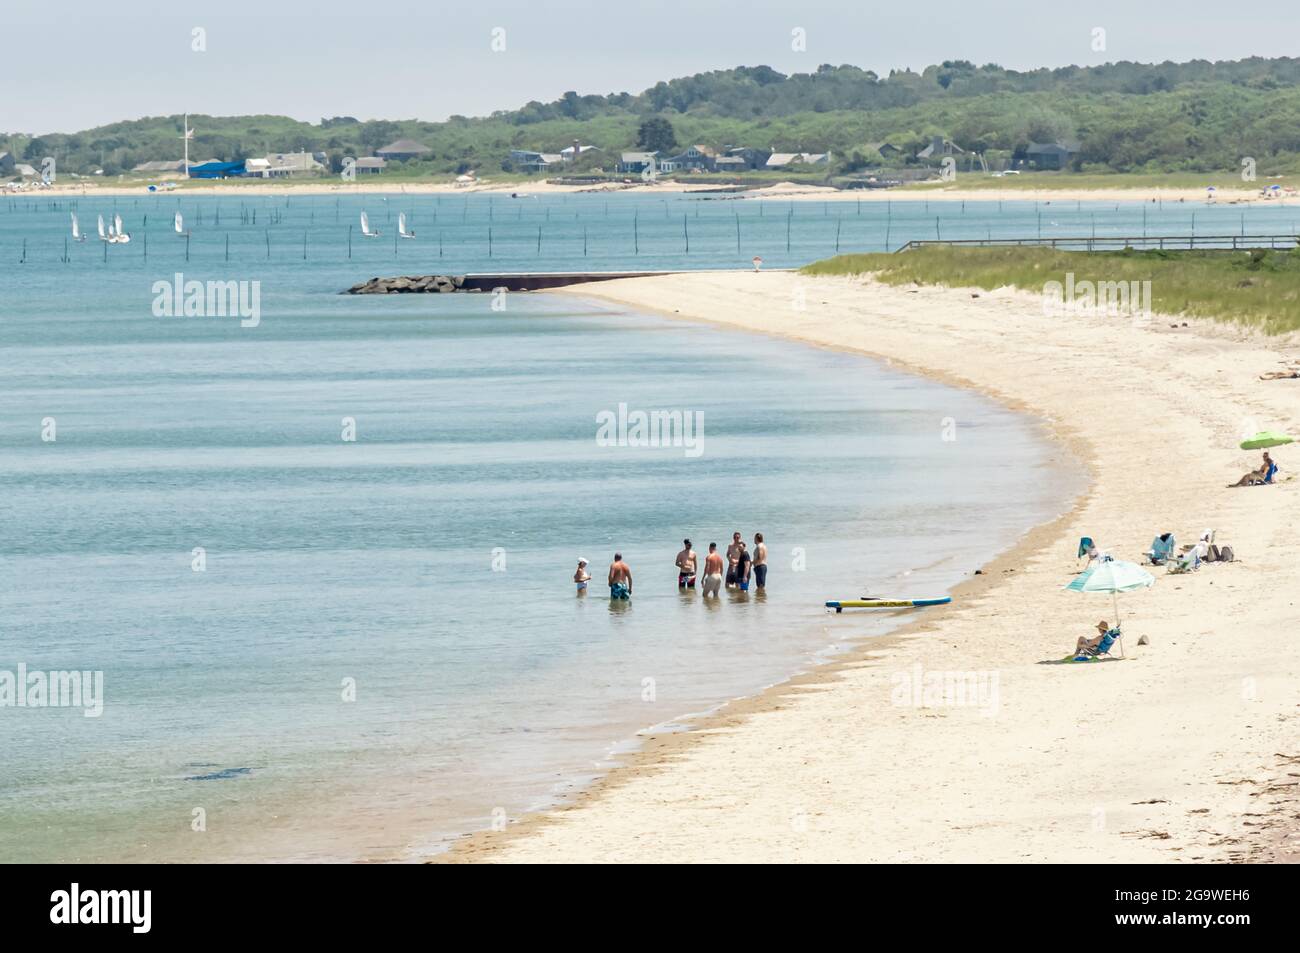 Paesaggio della spiaggia con persone in piedi in acqua e la gente sulla spiaggia, Amagansett, NY Foto Stock